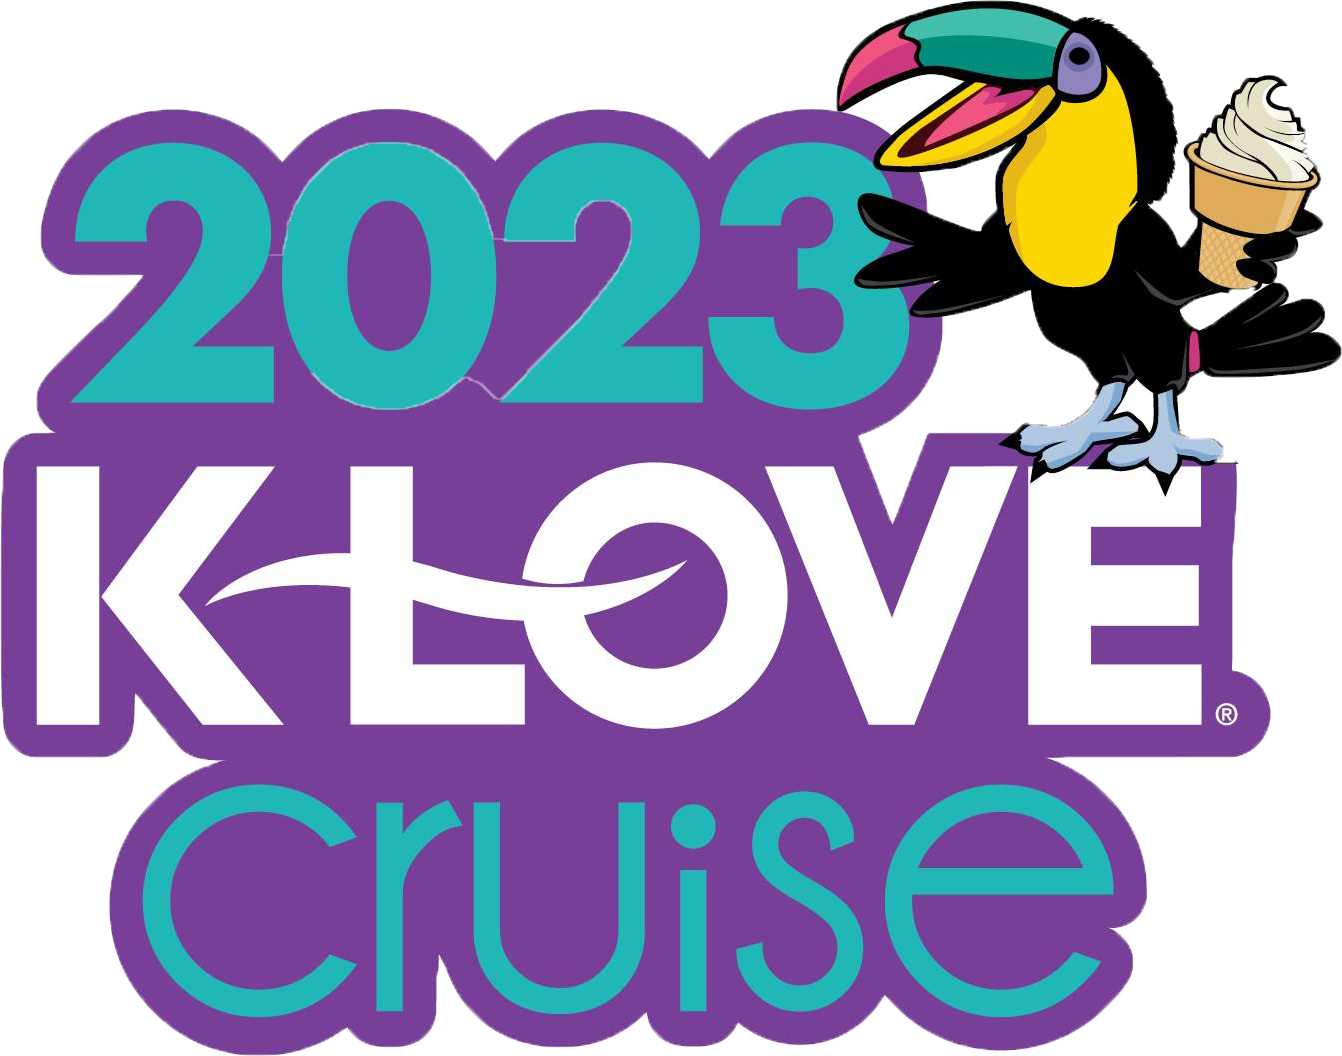 K-Love Cruise 2023 Themed Cruise Logo